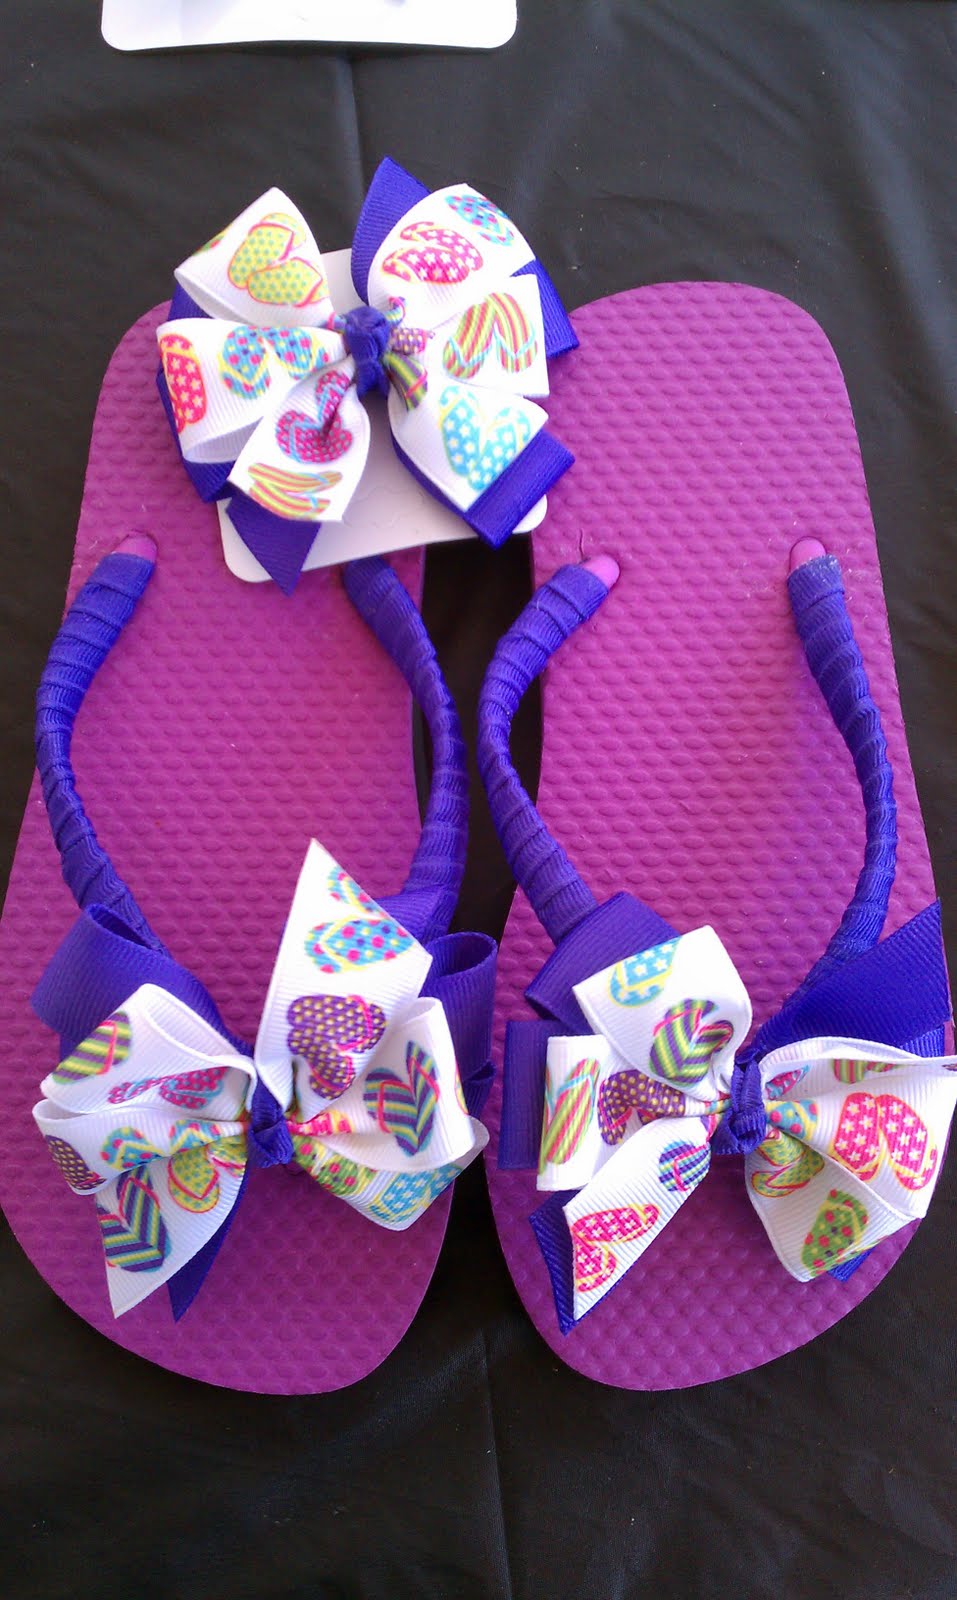 Bows 4 your princess: ribbon boutique flip-flops